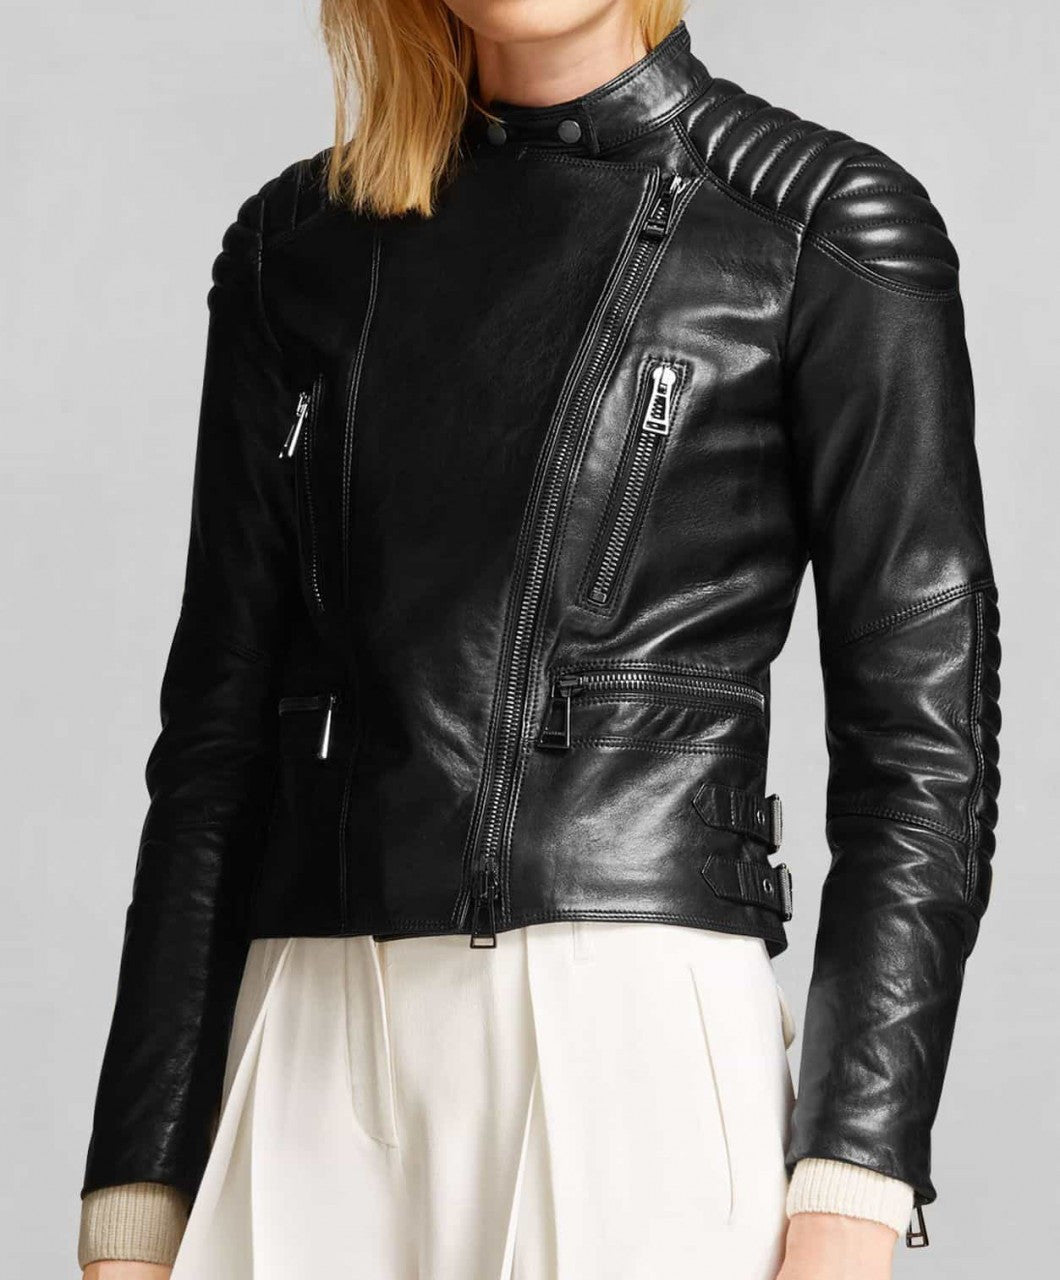 Women's Asymmetrical Black Leather Biker Jacket  Jacket outfit women,  Black leather jacket outfit, Leather jackets women